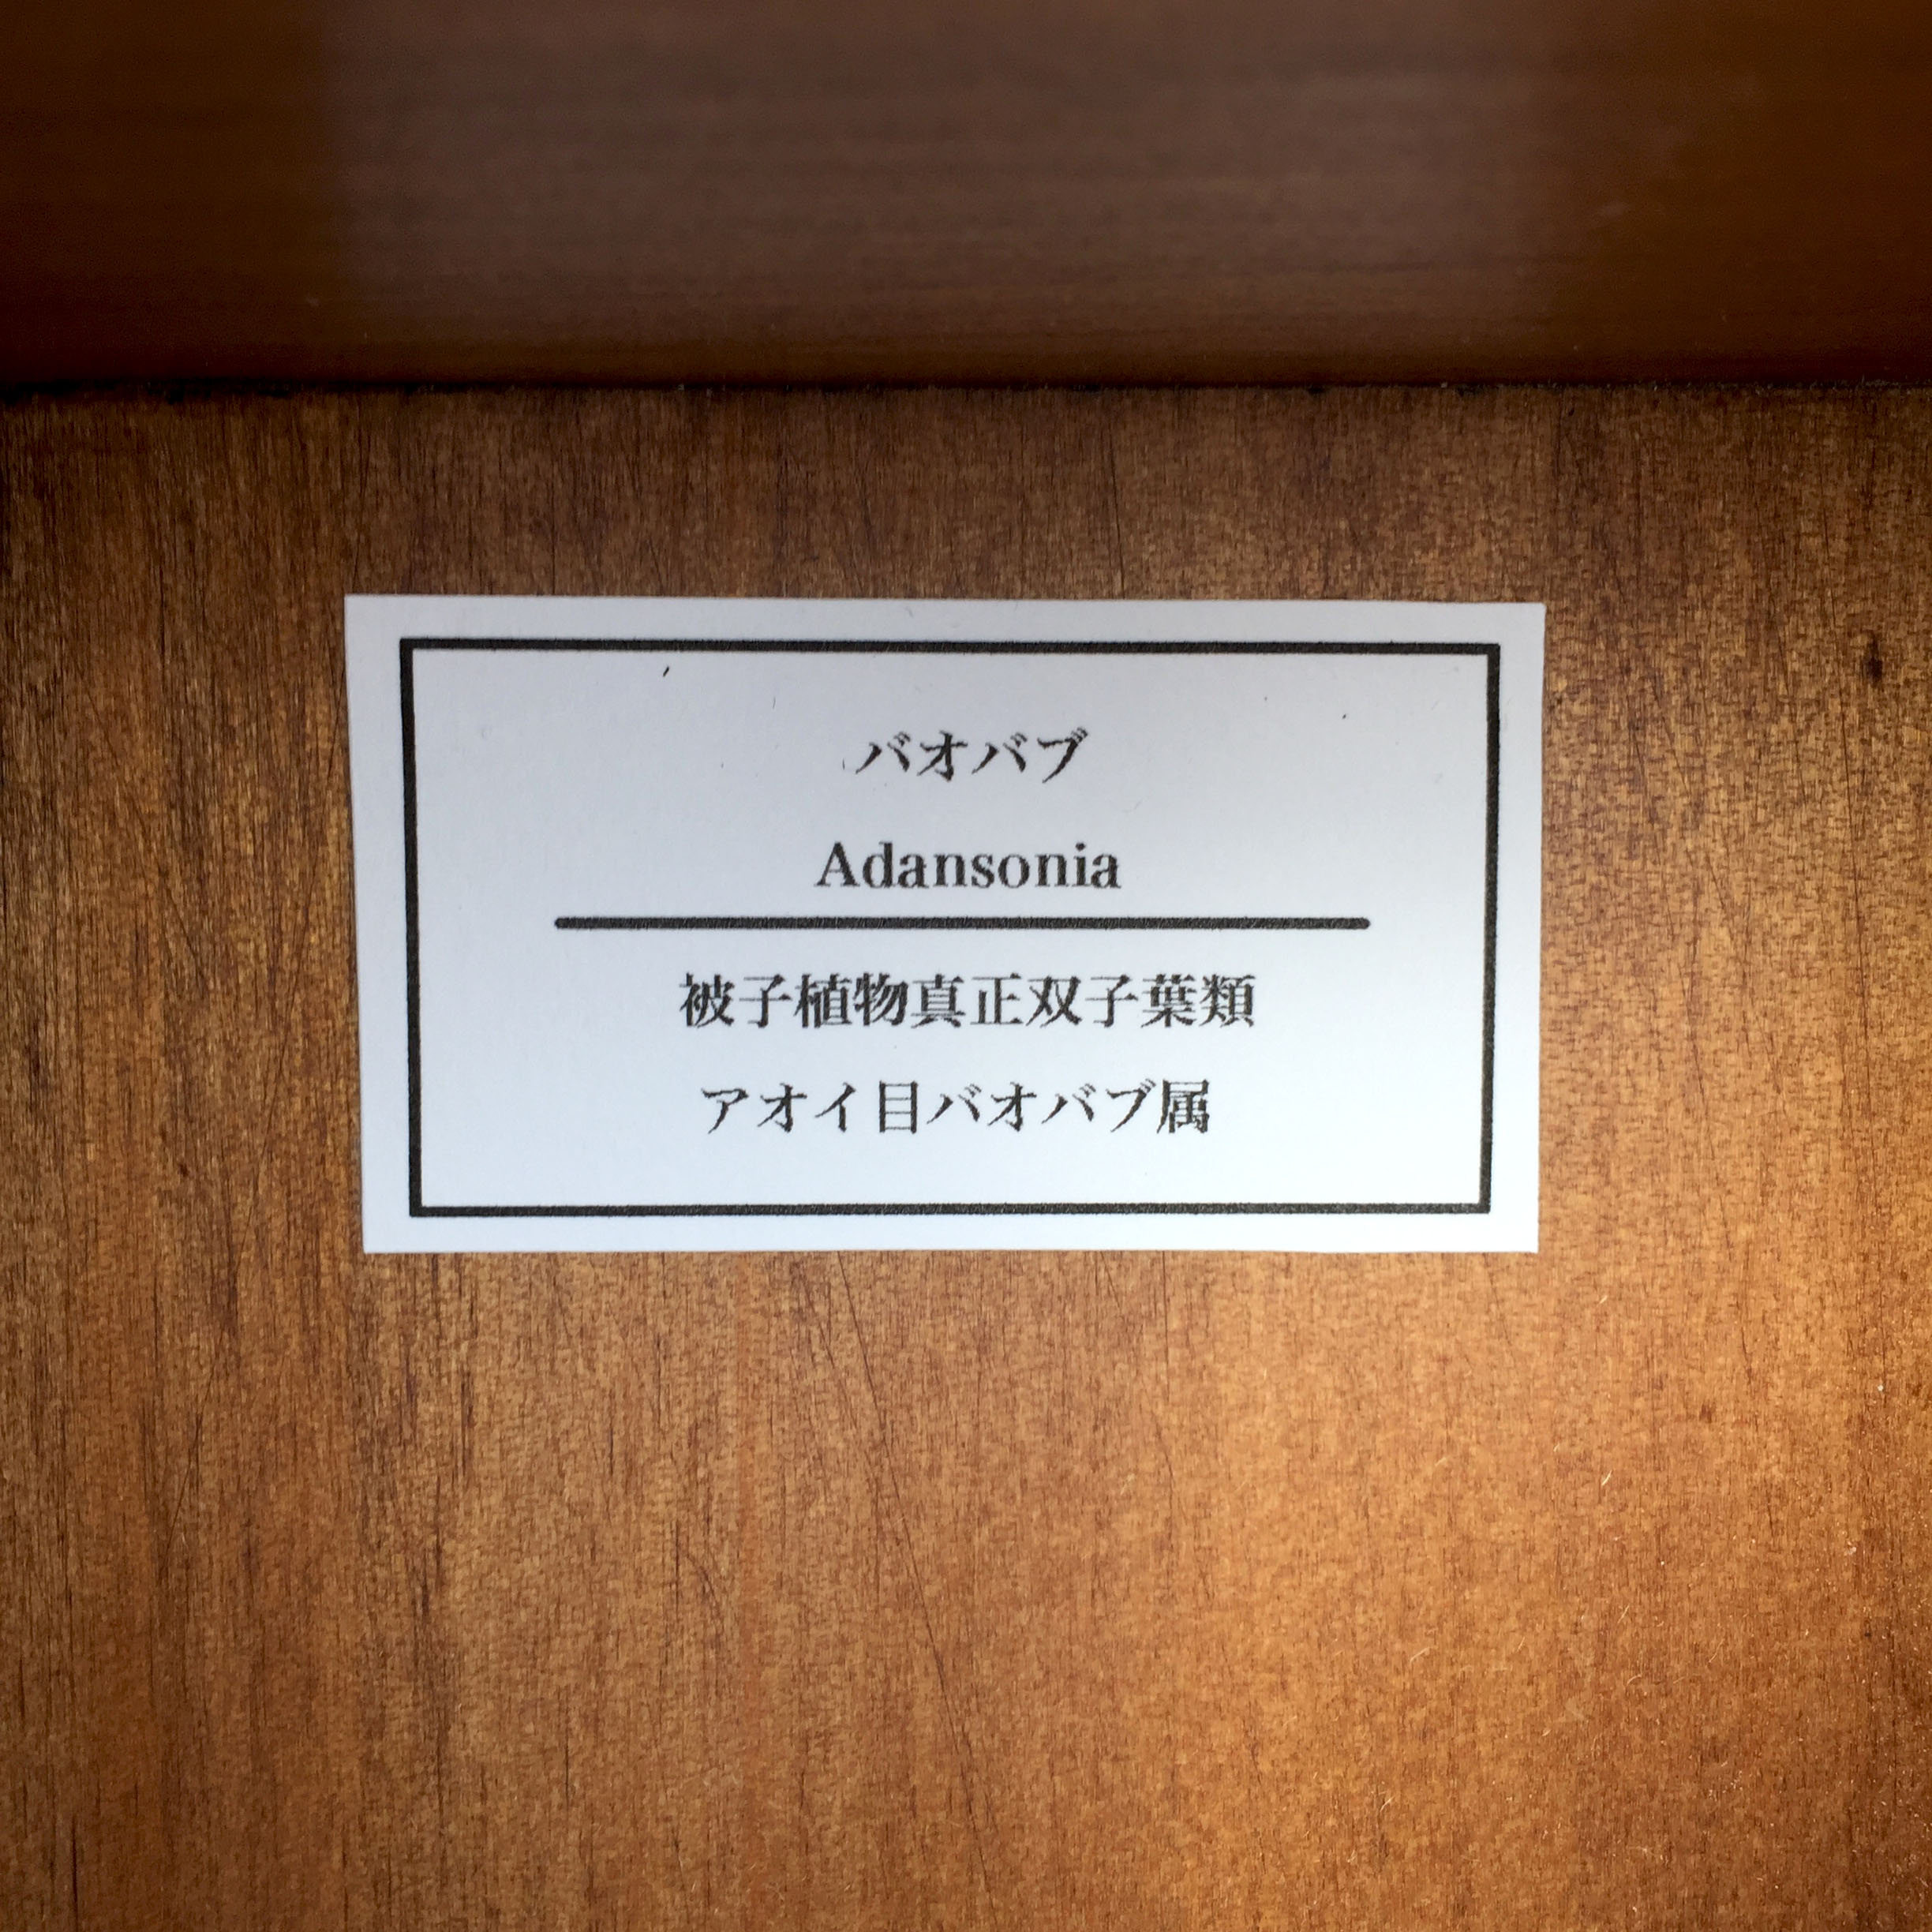 バオバブの実標本 Iichi ハンドメイド クラフト作品 手仕事品の通販